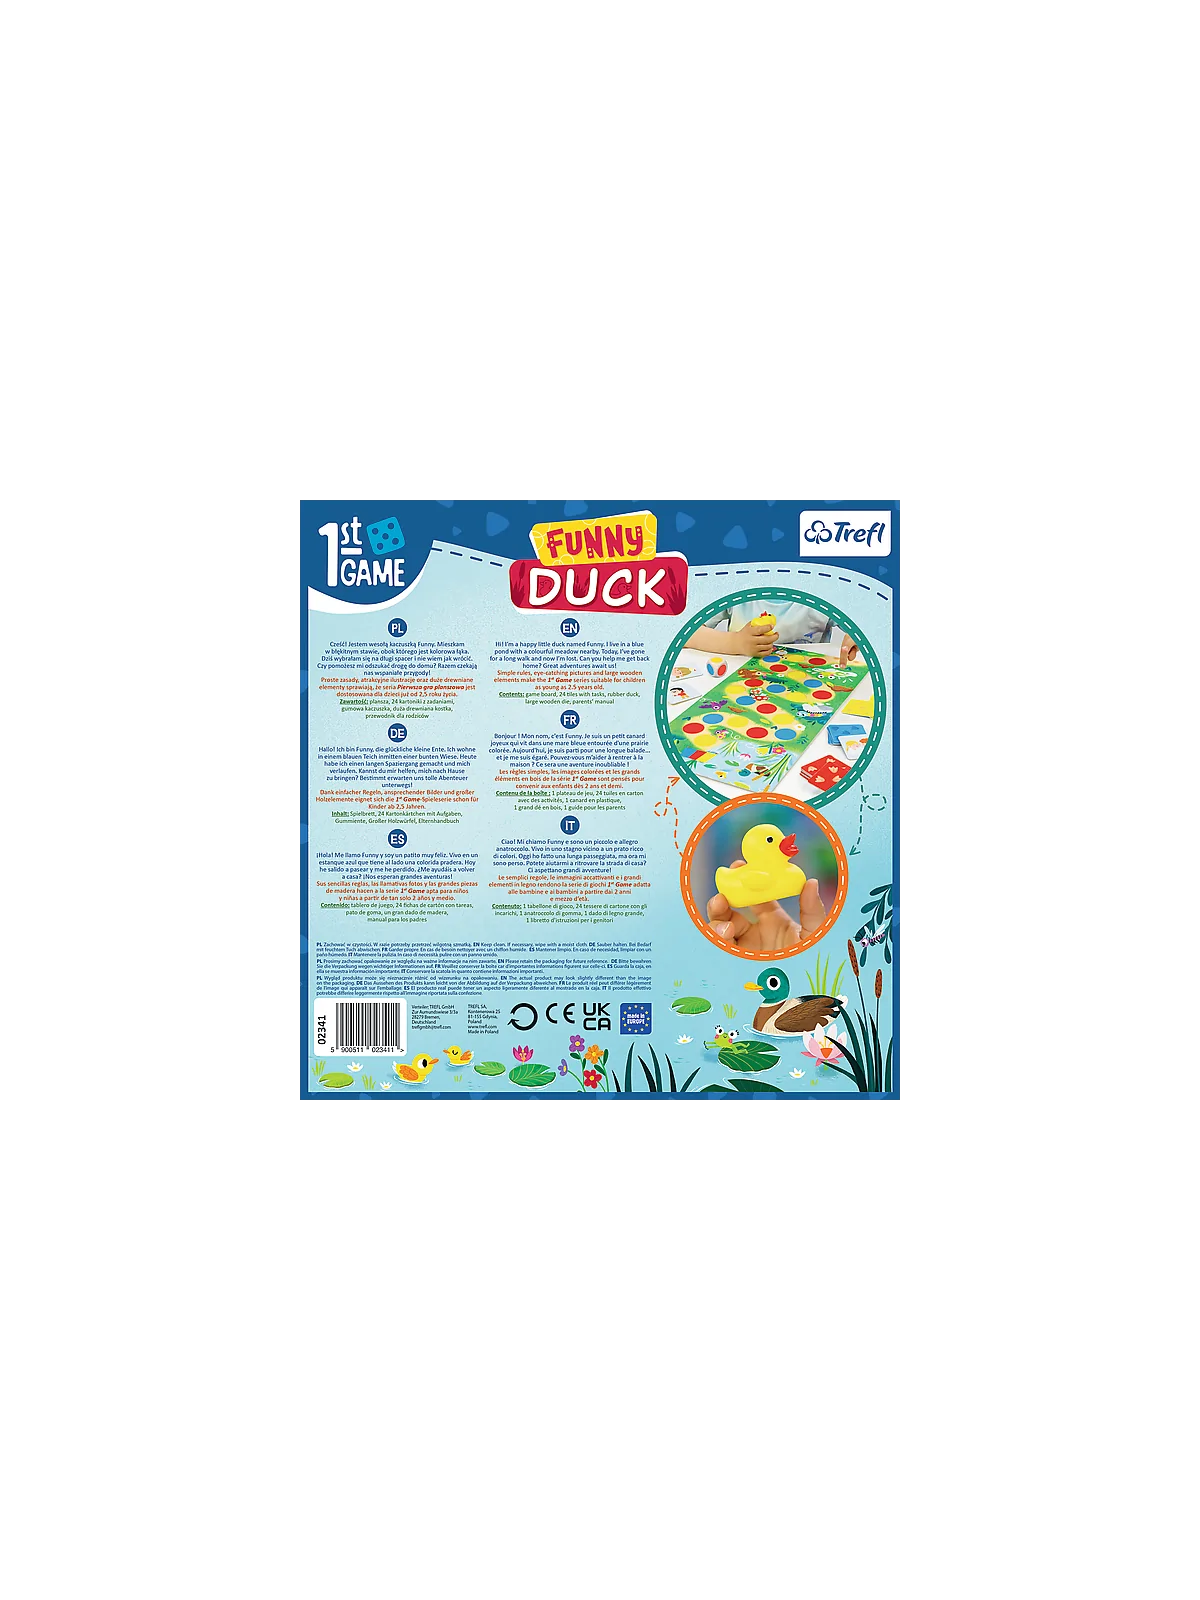 Comprar Funny Duck barato al mejor precio 19,99 € de Atomo Games